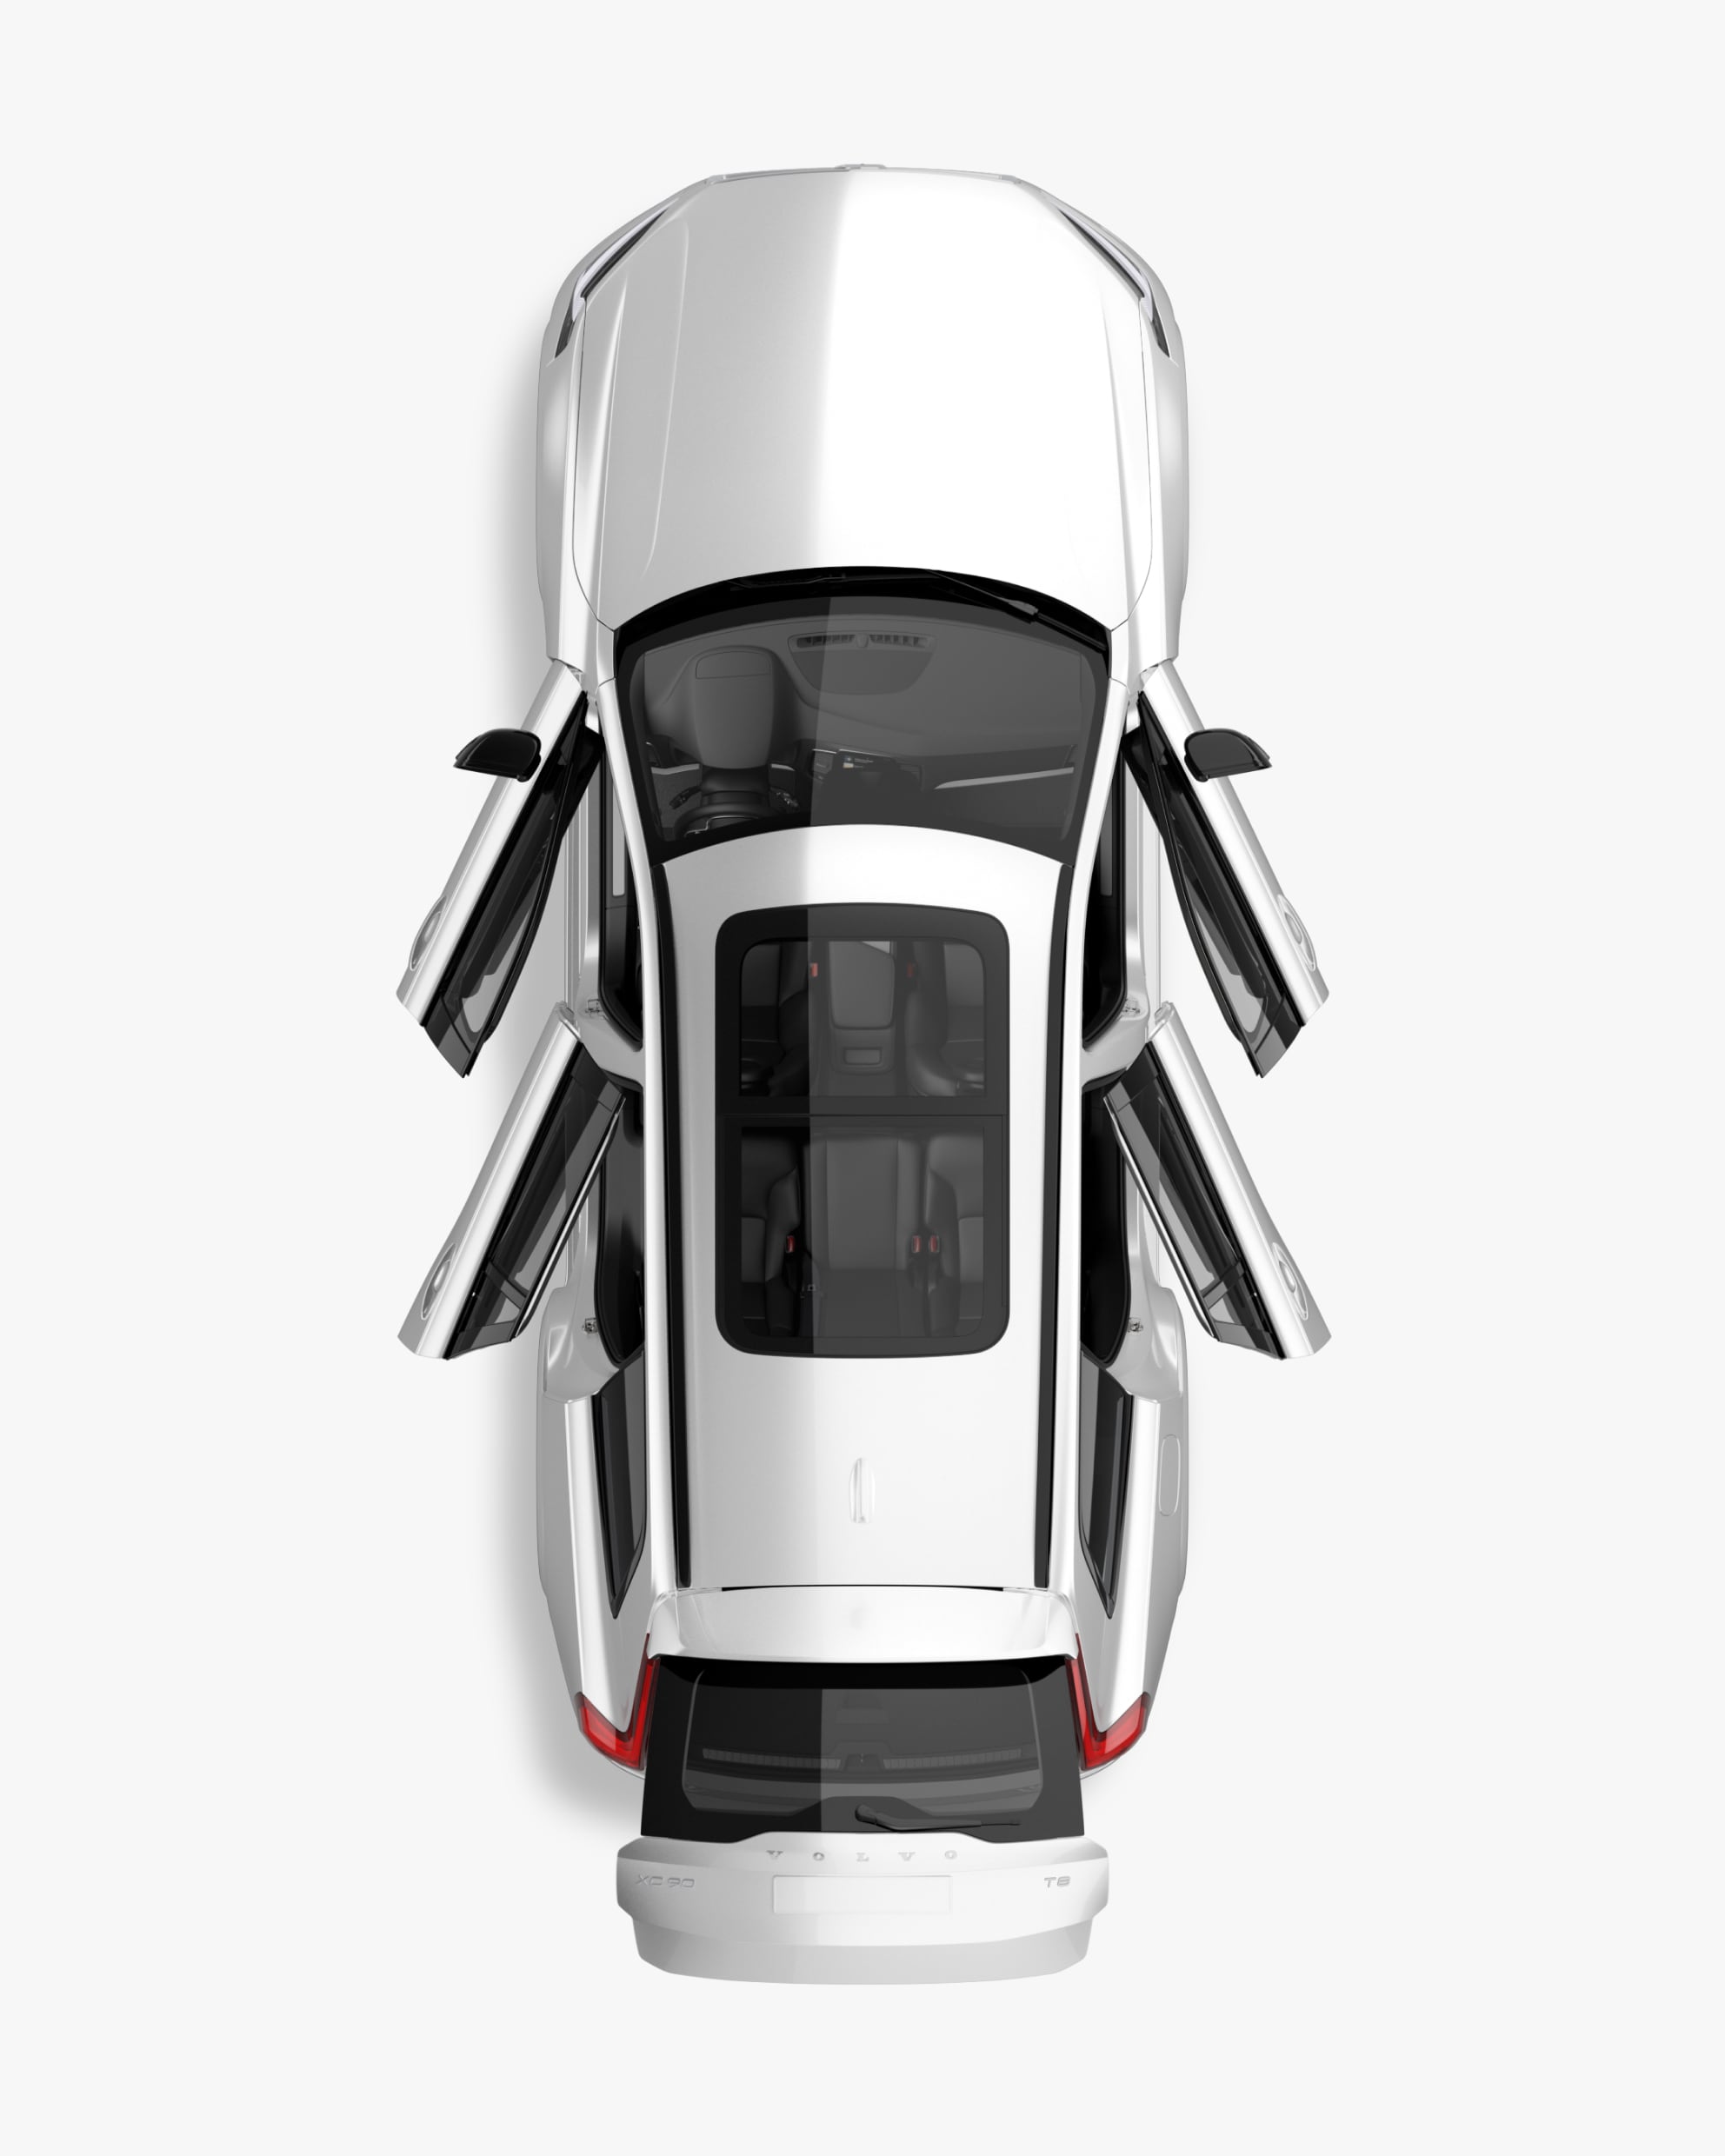 Priamy pohľad zhora na SUV Volvo XC90 zachytávajúci aj interiér.